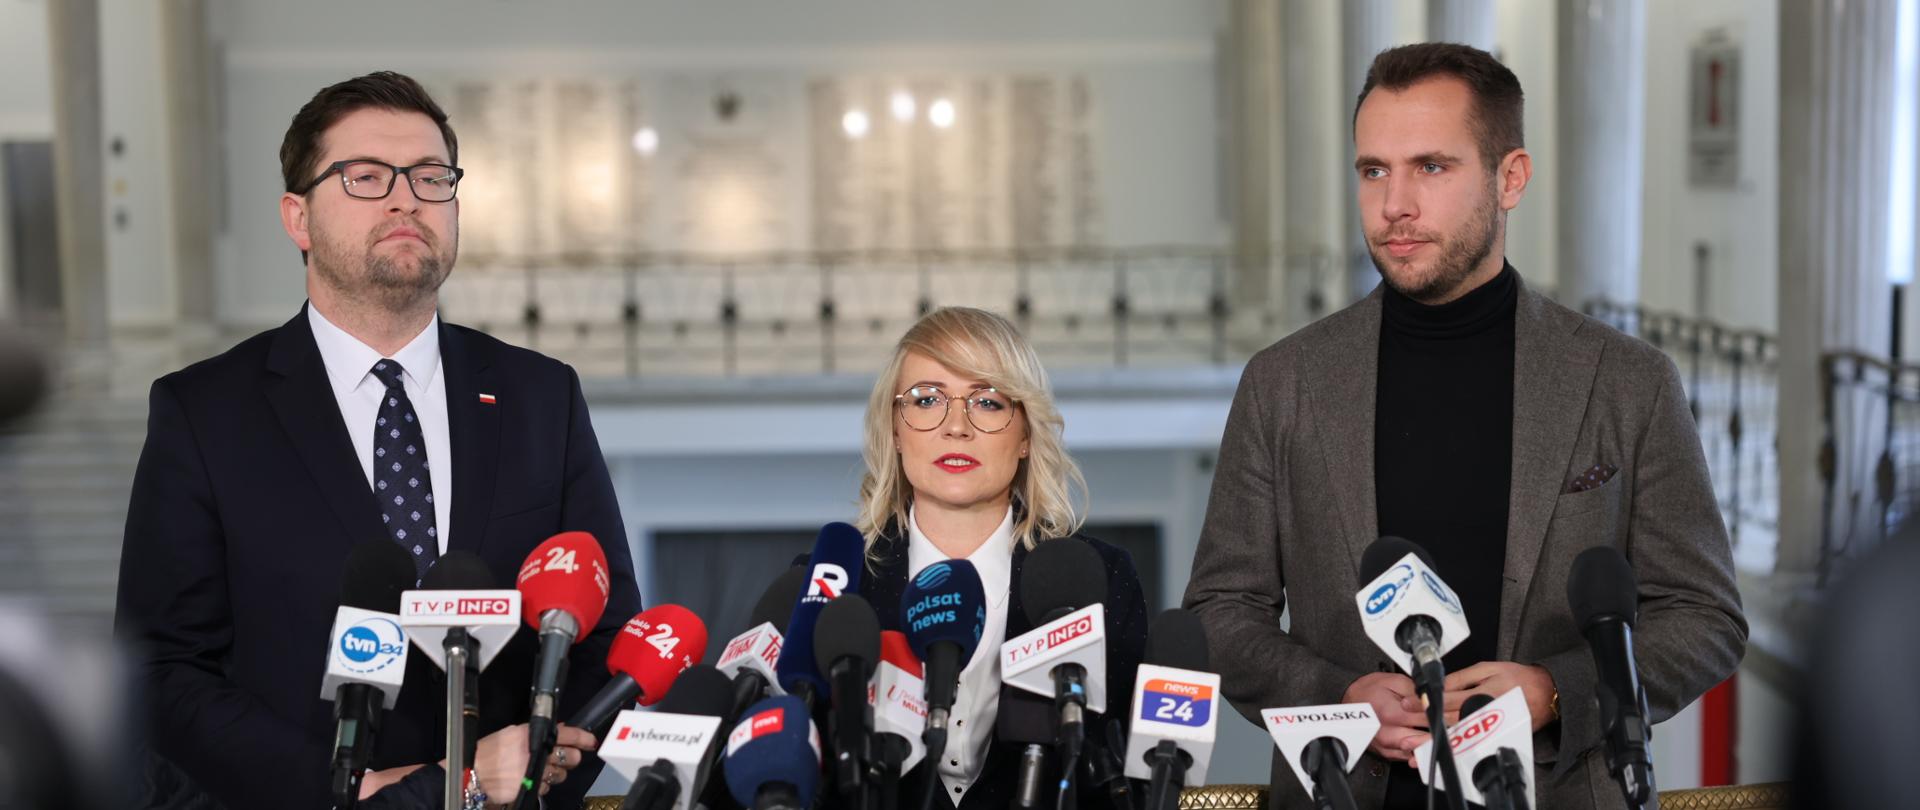 Minister Marzena Małek, wiceminister Jan Kanthak oraz poseł Andrzej Śliwka podczas konferencji prasowej.